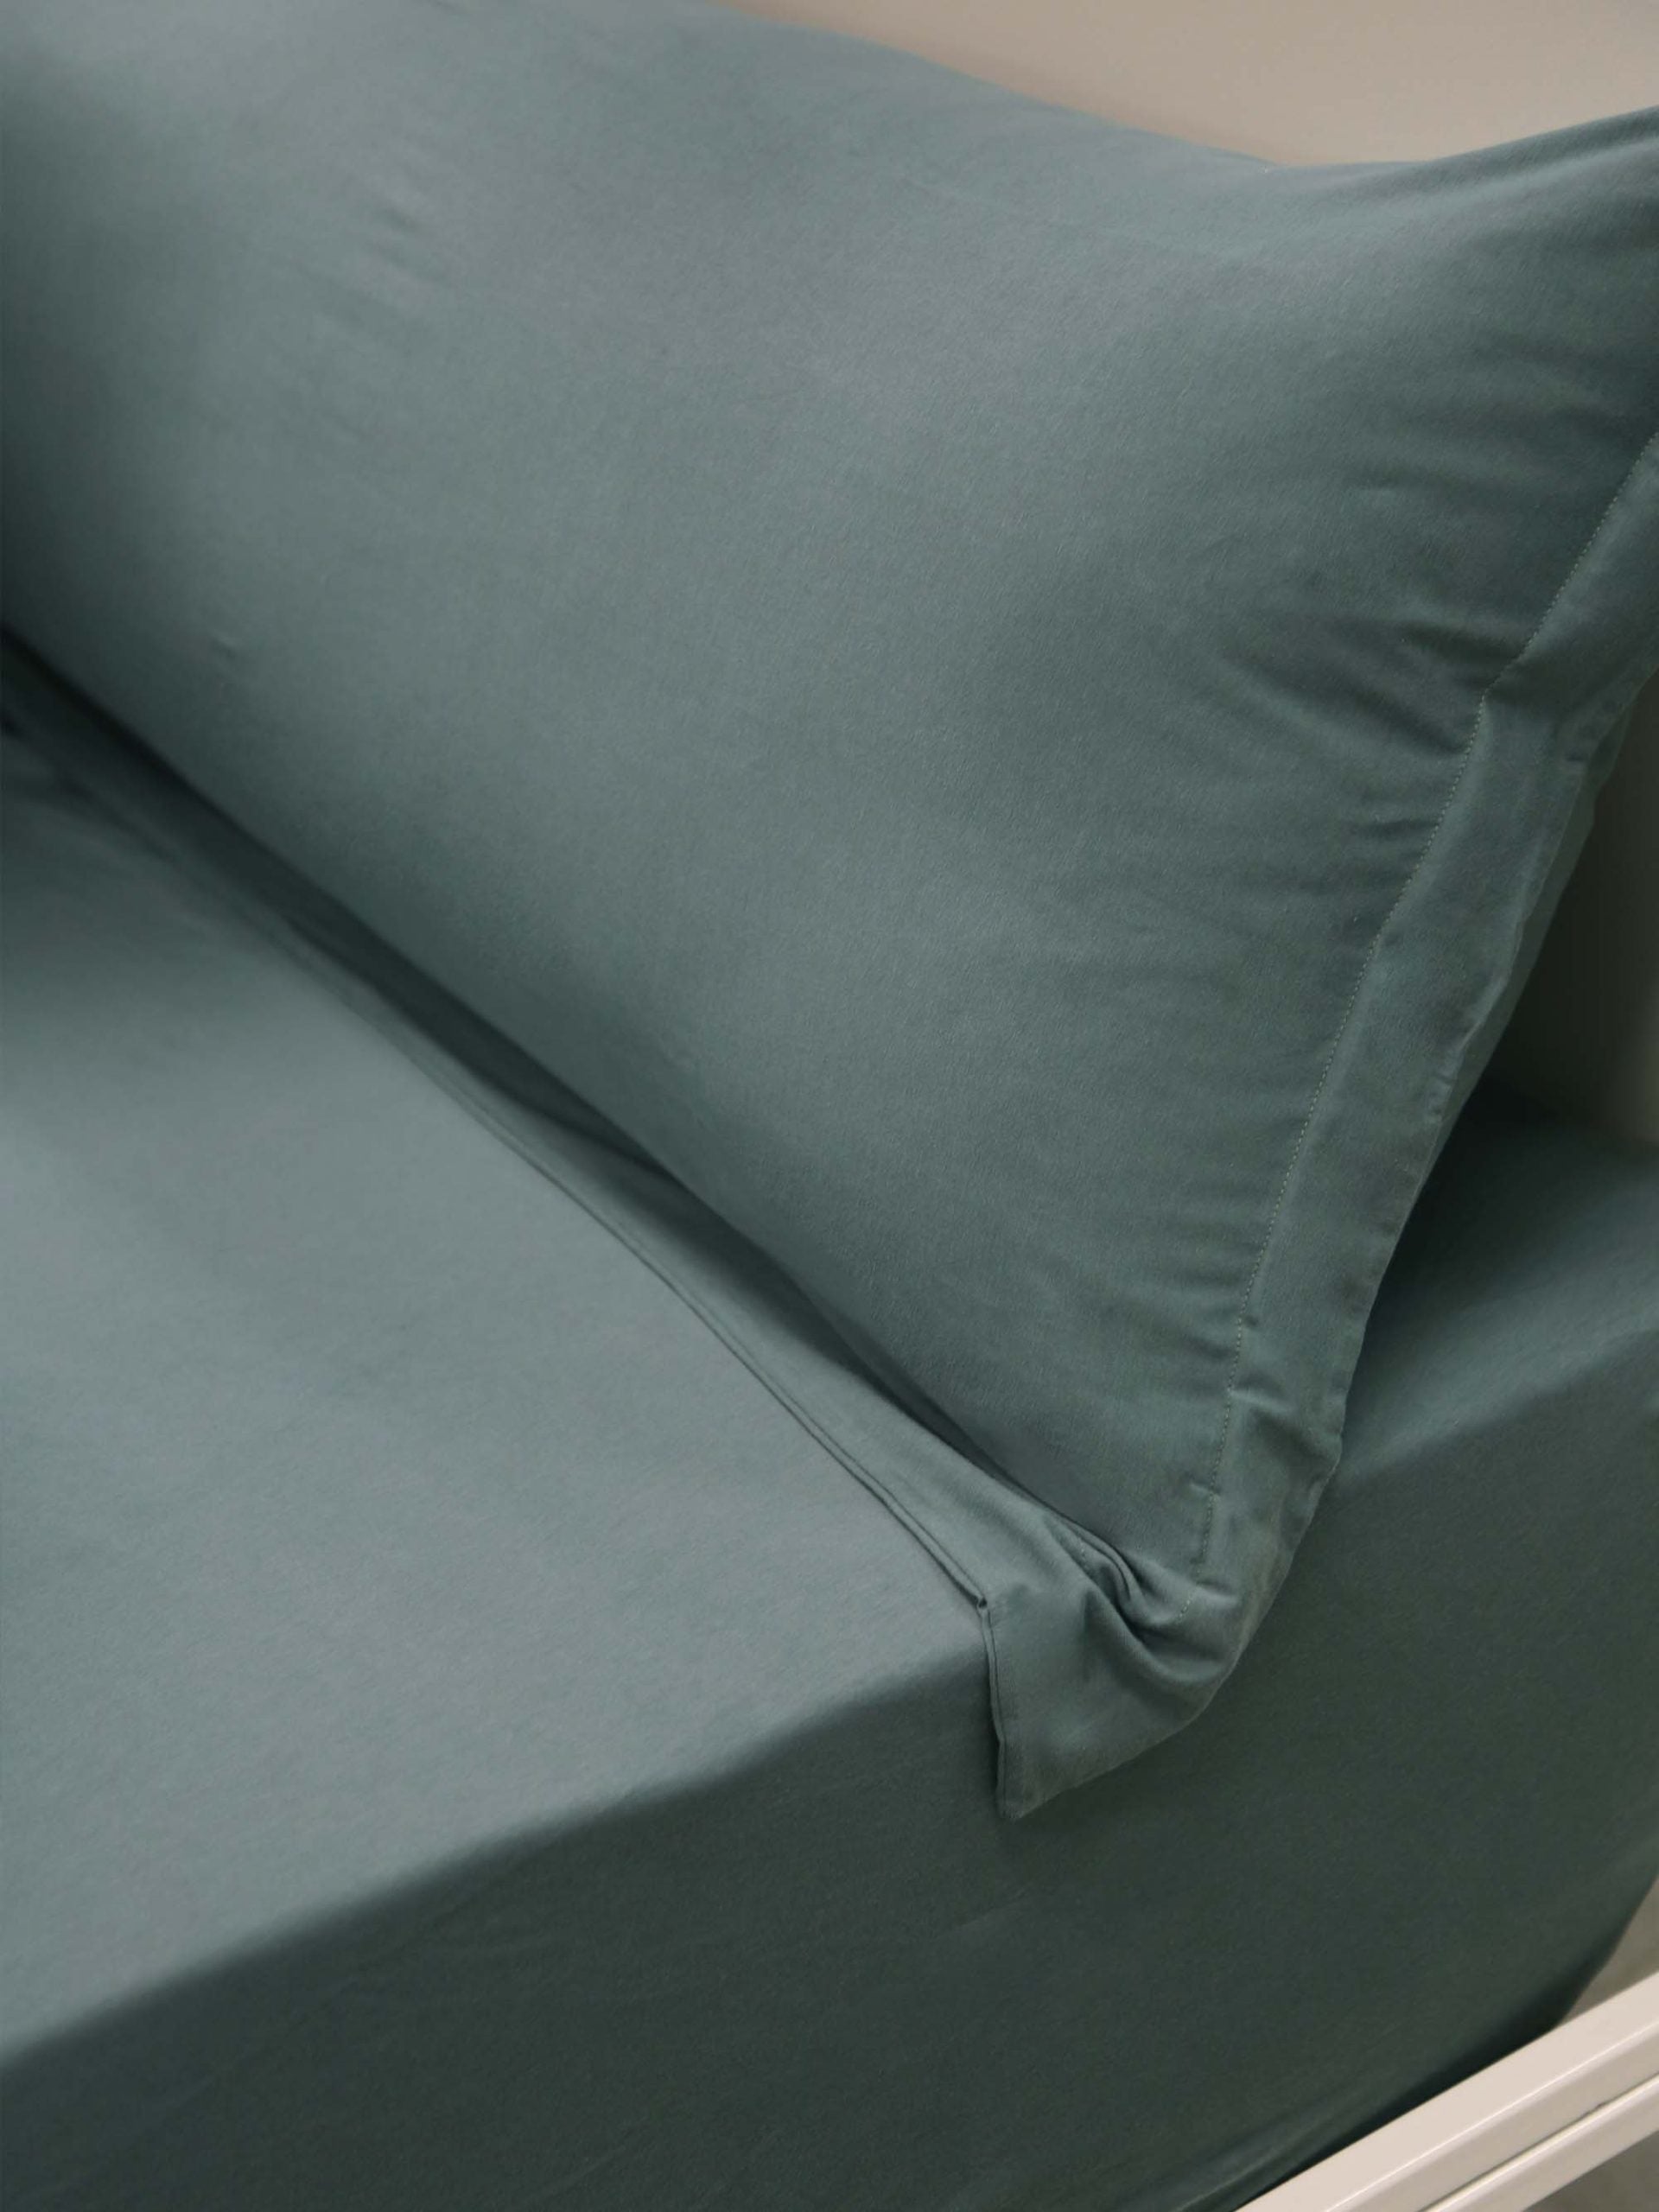 מיטת ברזל לבנה עם סדין, כרית וציפית לכרית ארוכה בצבע אושן בחדר עם קירות אפורים